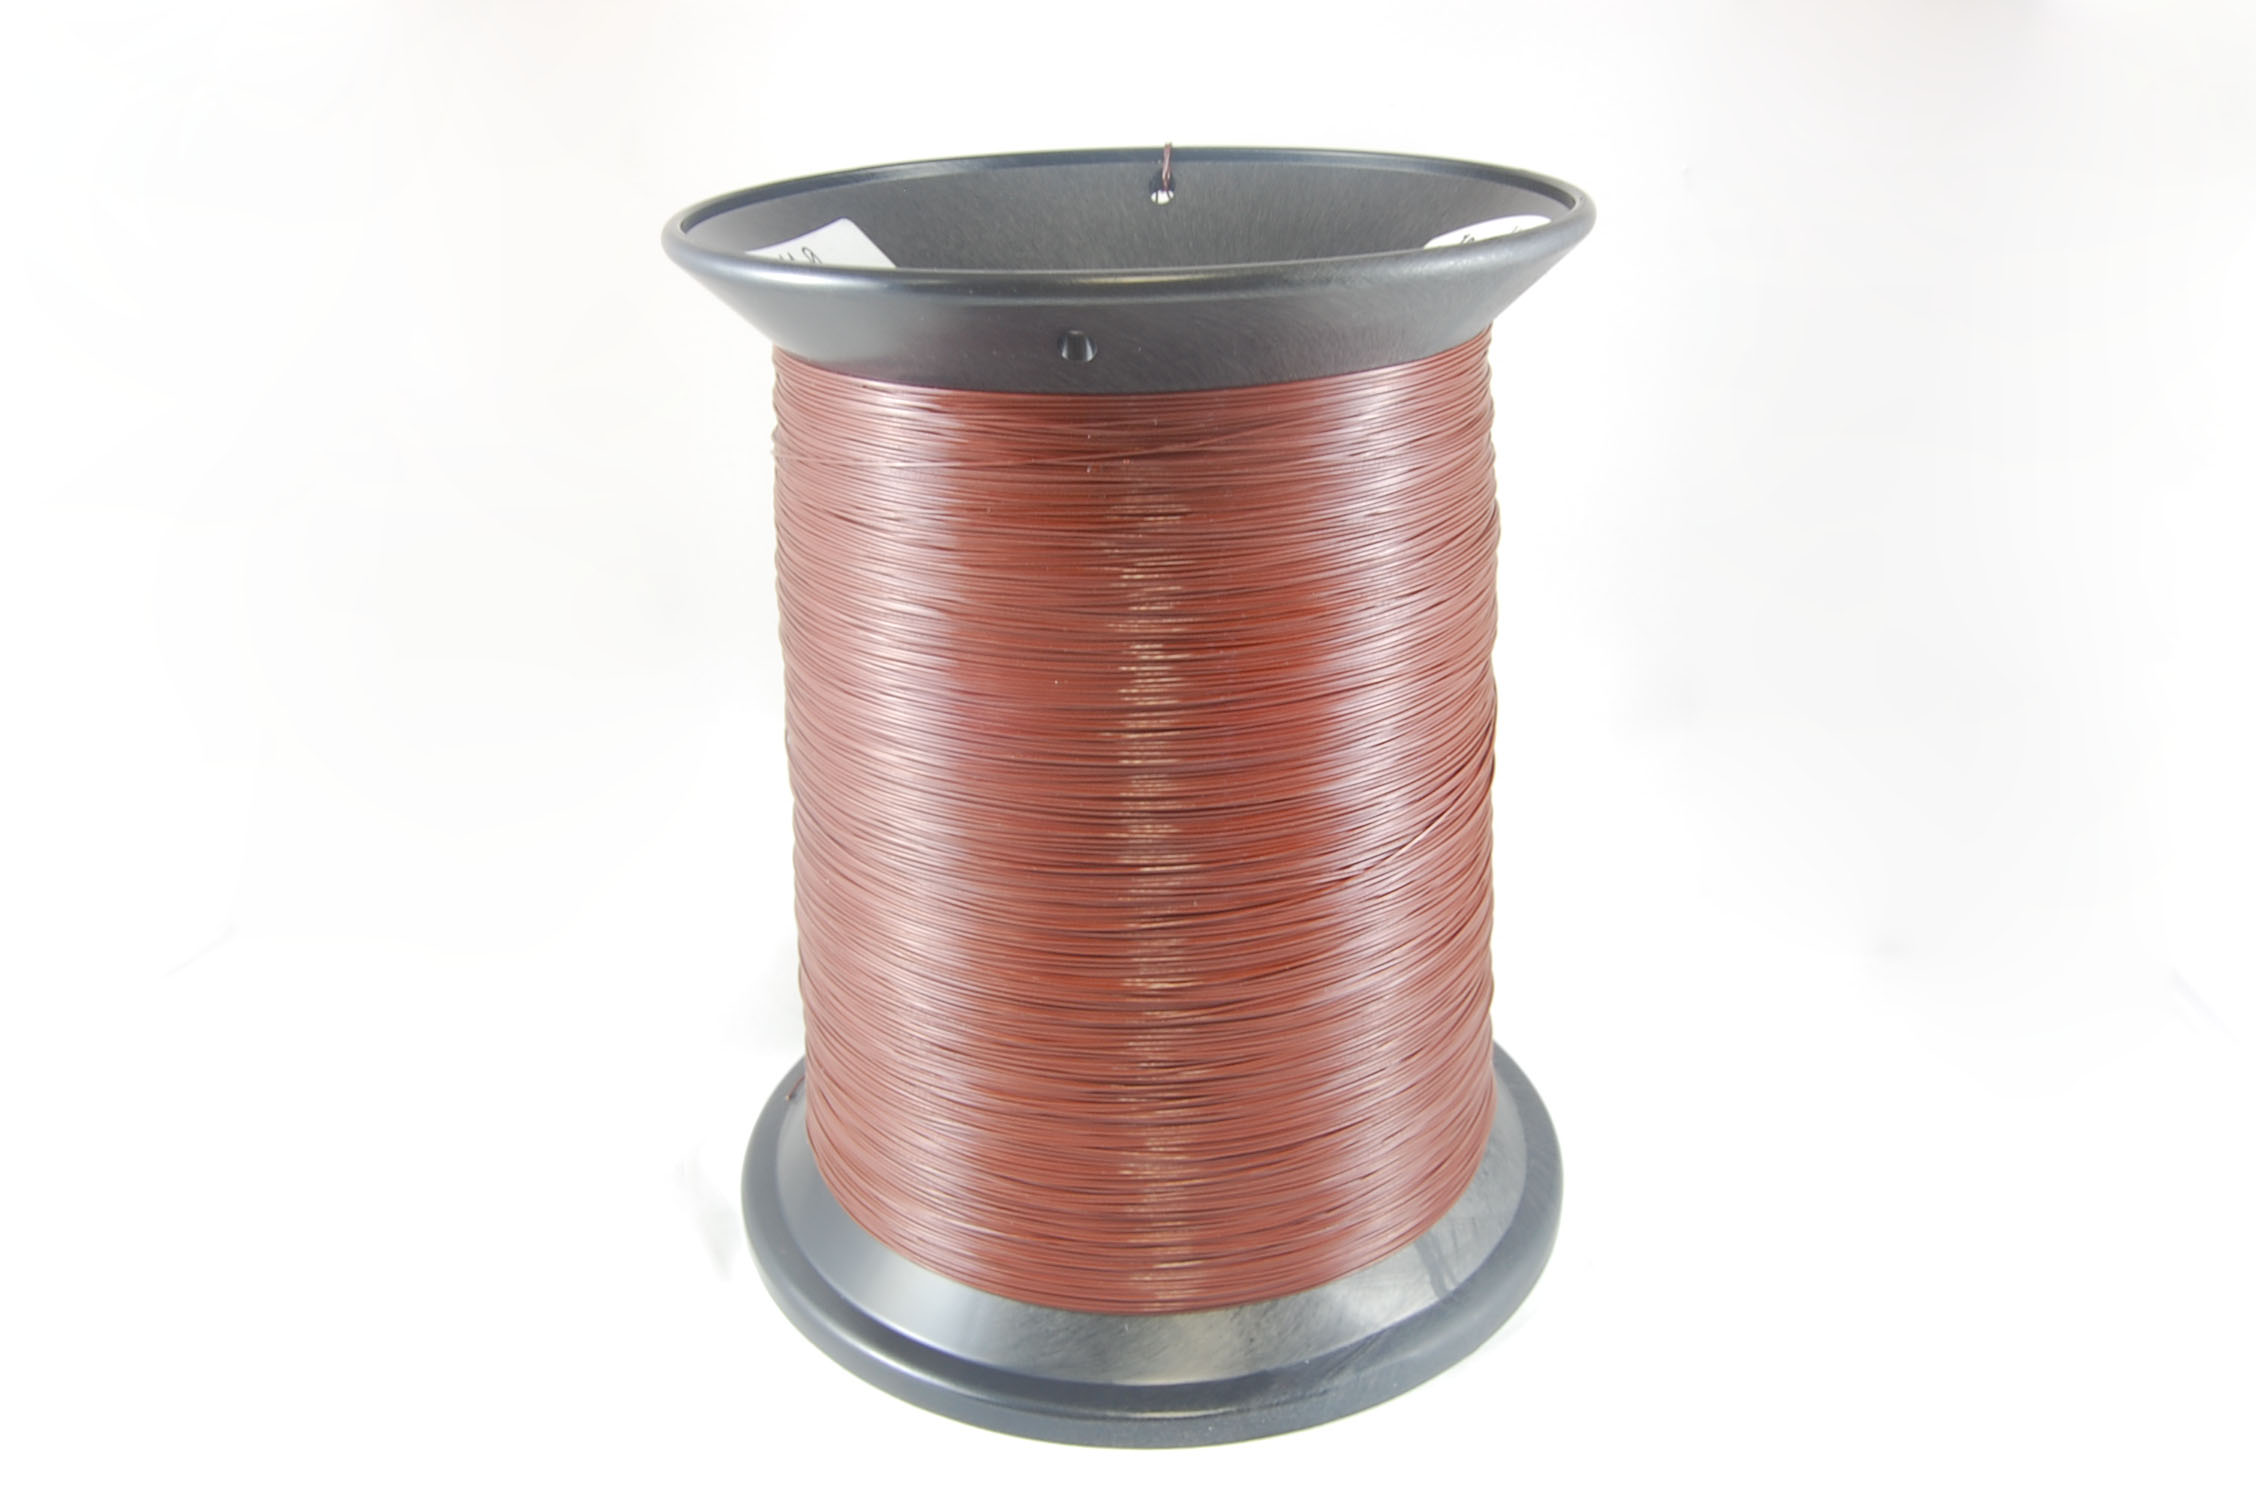 #27 Heavy Ultra Shield Plus (Inverter Duty) Round MW 35 Copper Magnet Wire 200°C, copper, 85 LB box (average wght.)